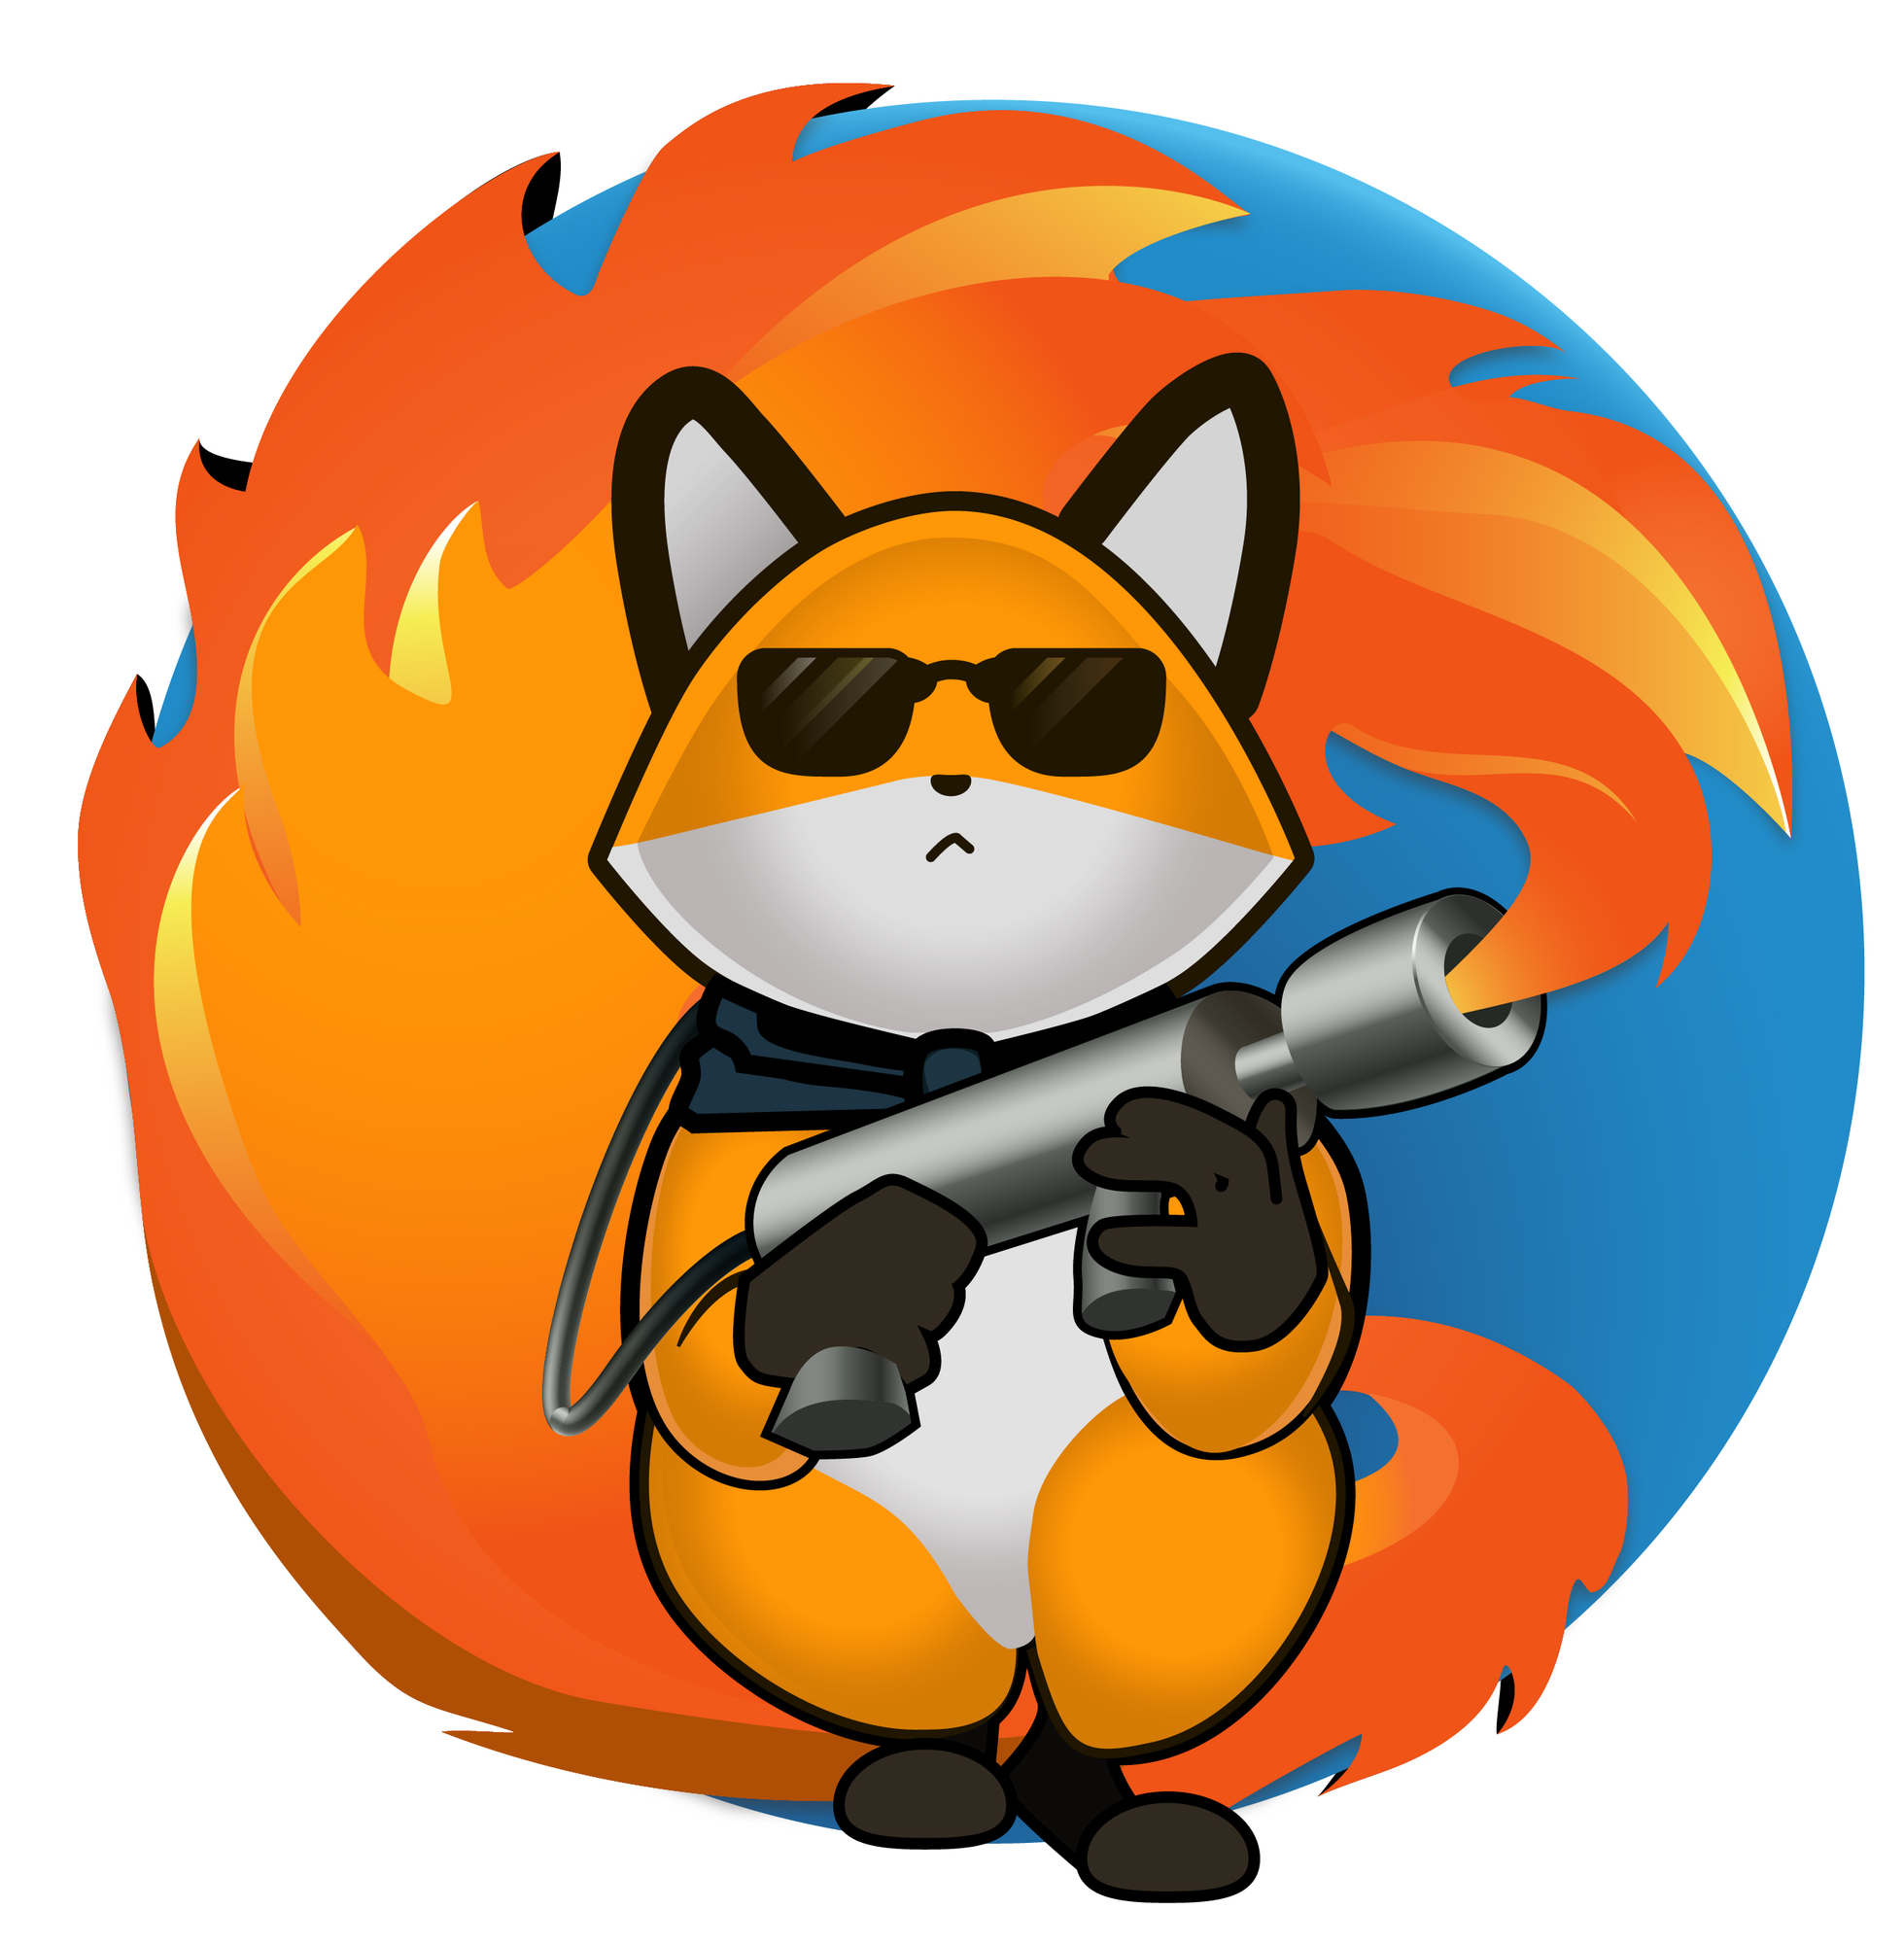 Eine etwas speziellere Interpretation des Firefox-Logos